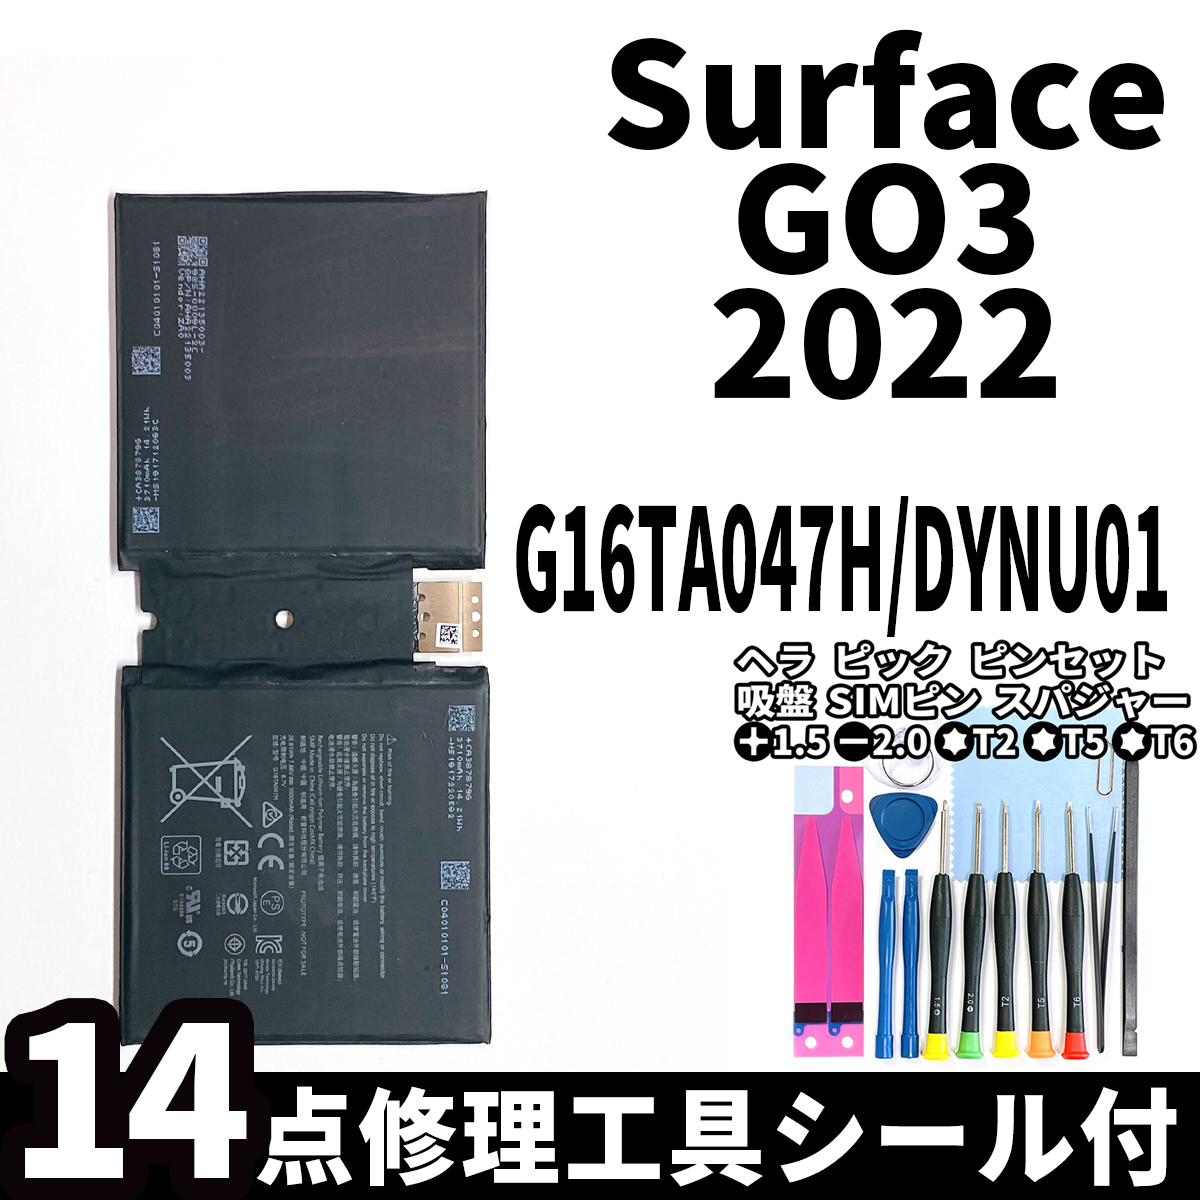 国内即日発送!純正同等新品!Surface GO3 バッテリー G16TA047H DYNU01 2022 電池パック交換 本体 内蔵battery 両面テープ 修理工具付